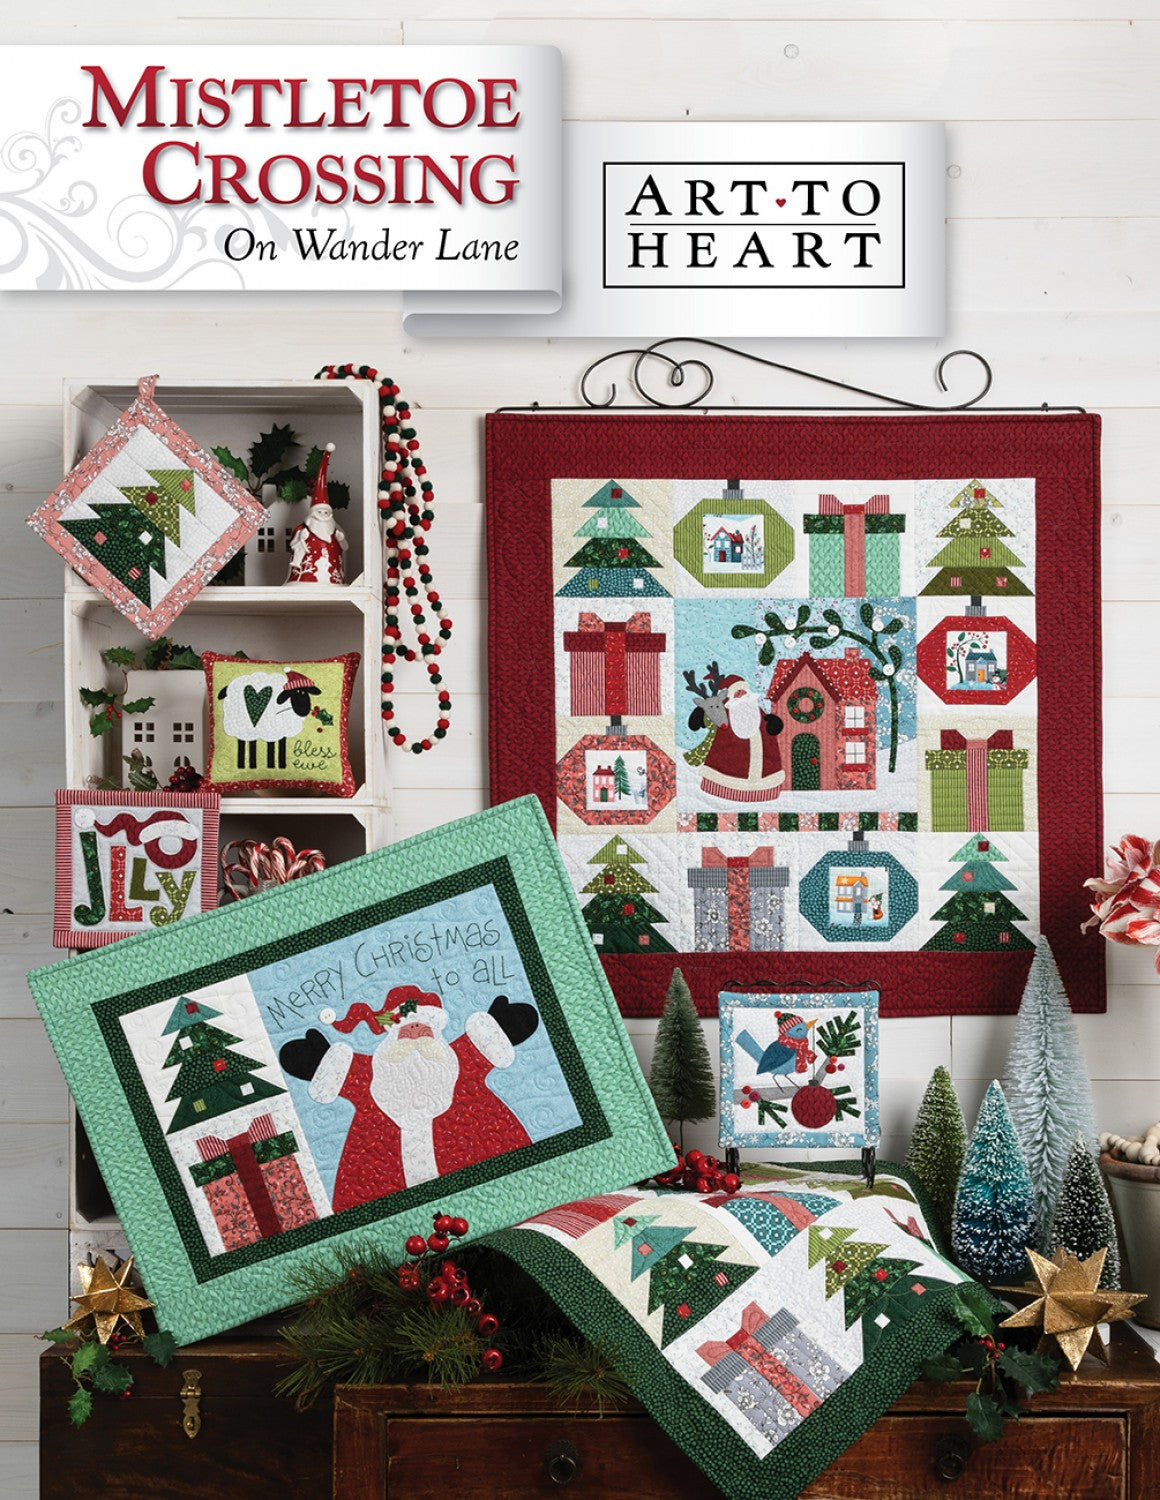 Mistletoe Crossing on Wander Lane Quilt Pattern (December - Block 12) by Nancy Halvorsen of Art to Heart